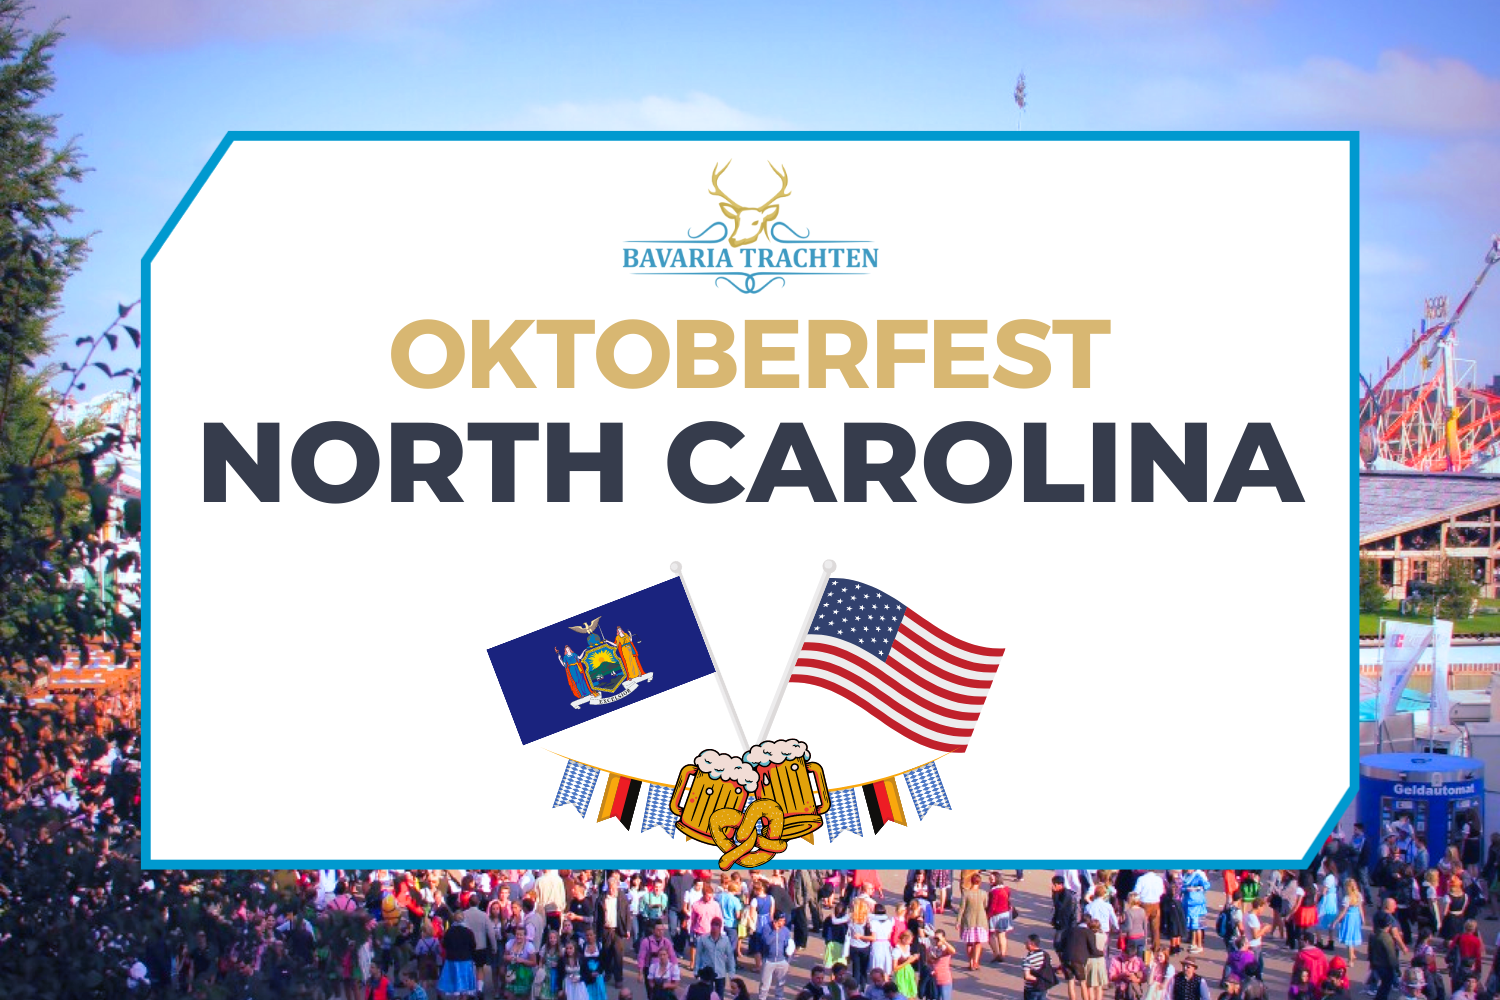 Oktoberfest North Carolina, USA